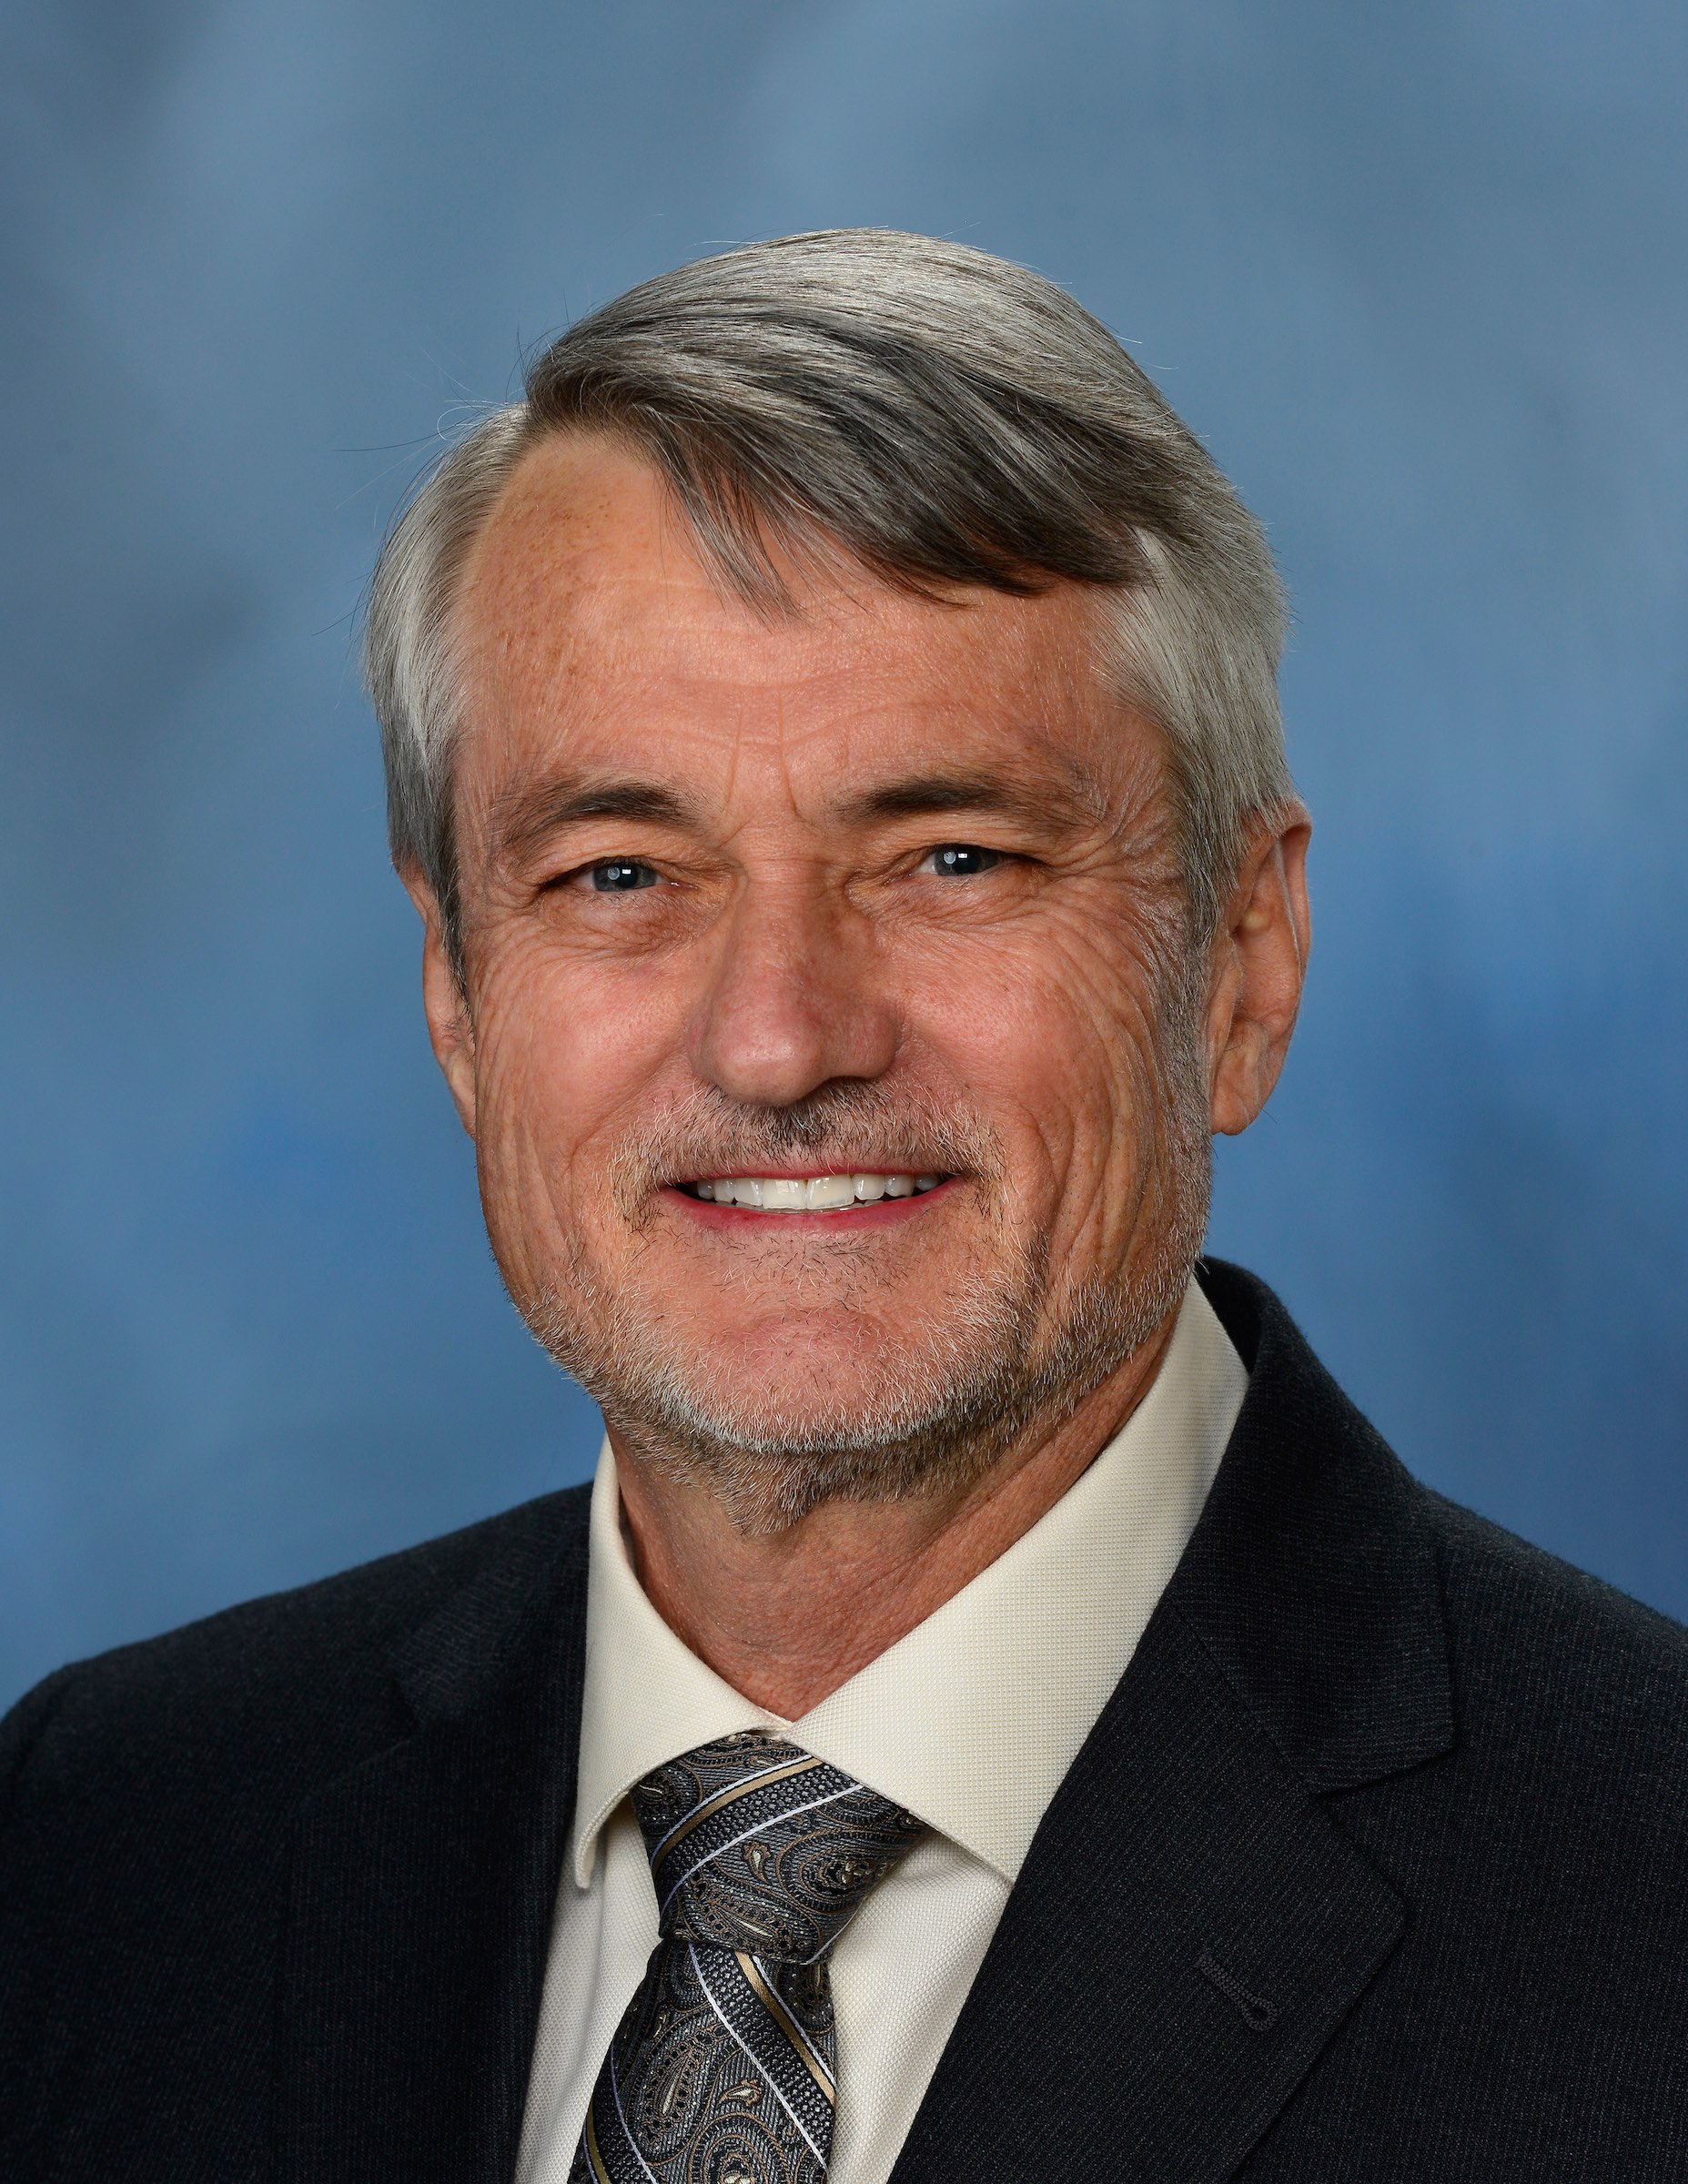 Dr. Robert Boyd, Associate Dean of Academic Affairs